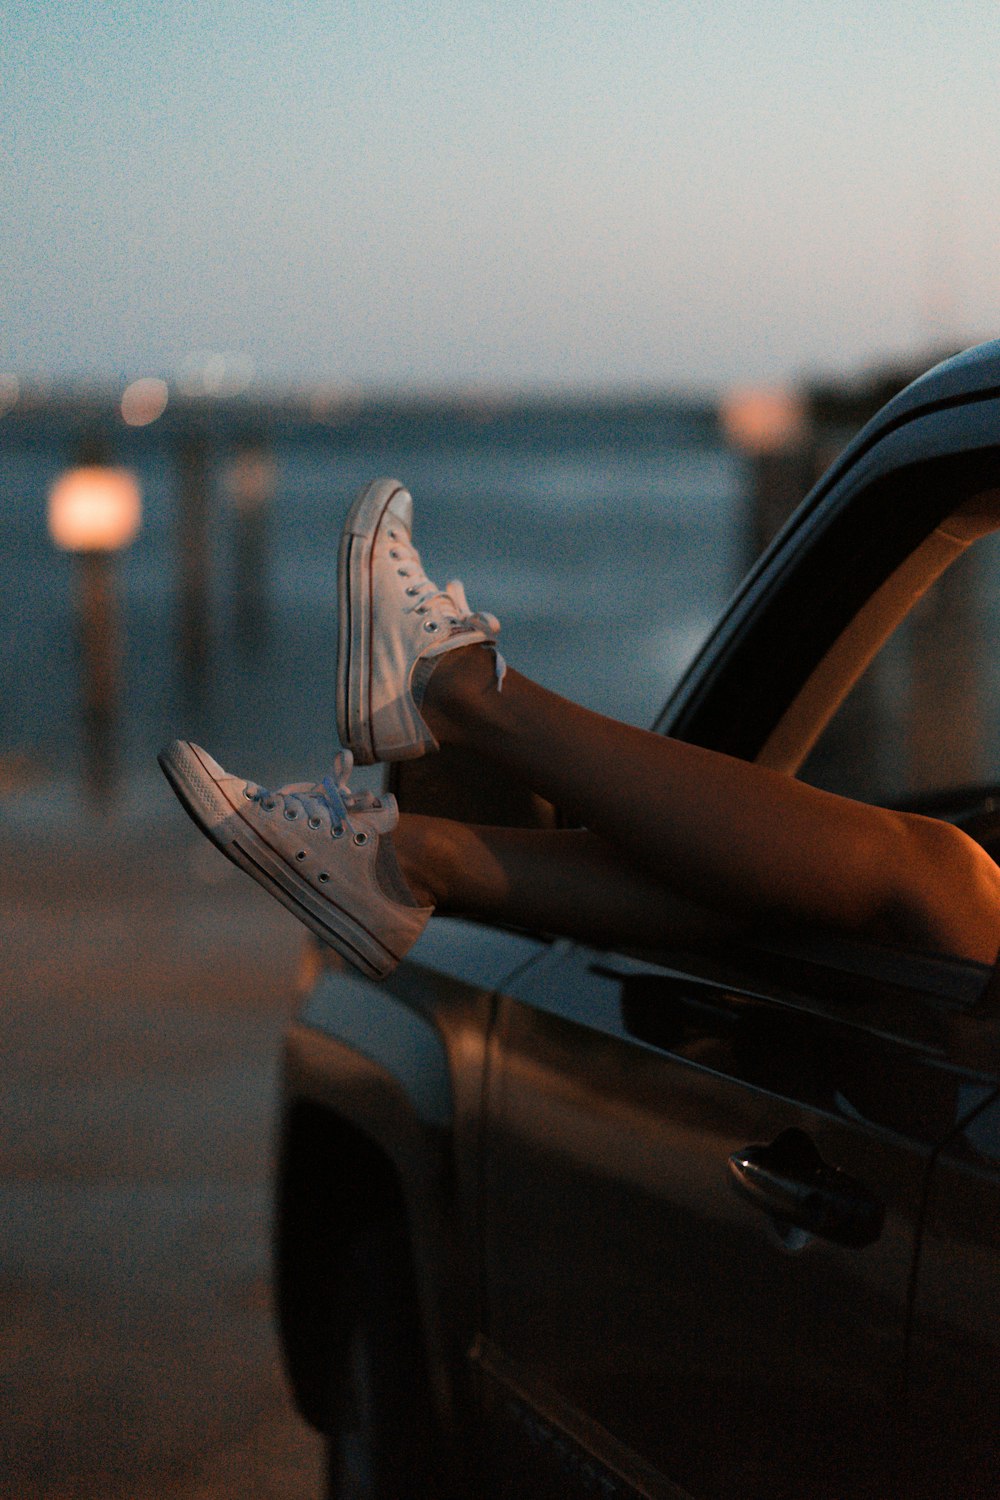 Fotografía de enfoque selectivo de una persona que lleva zapatillas blancas de caña baja dentro del vehículo